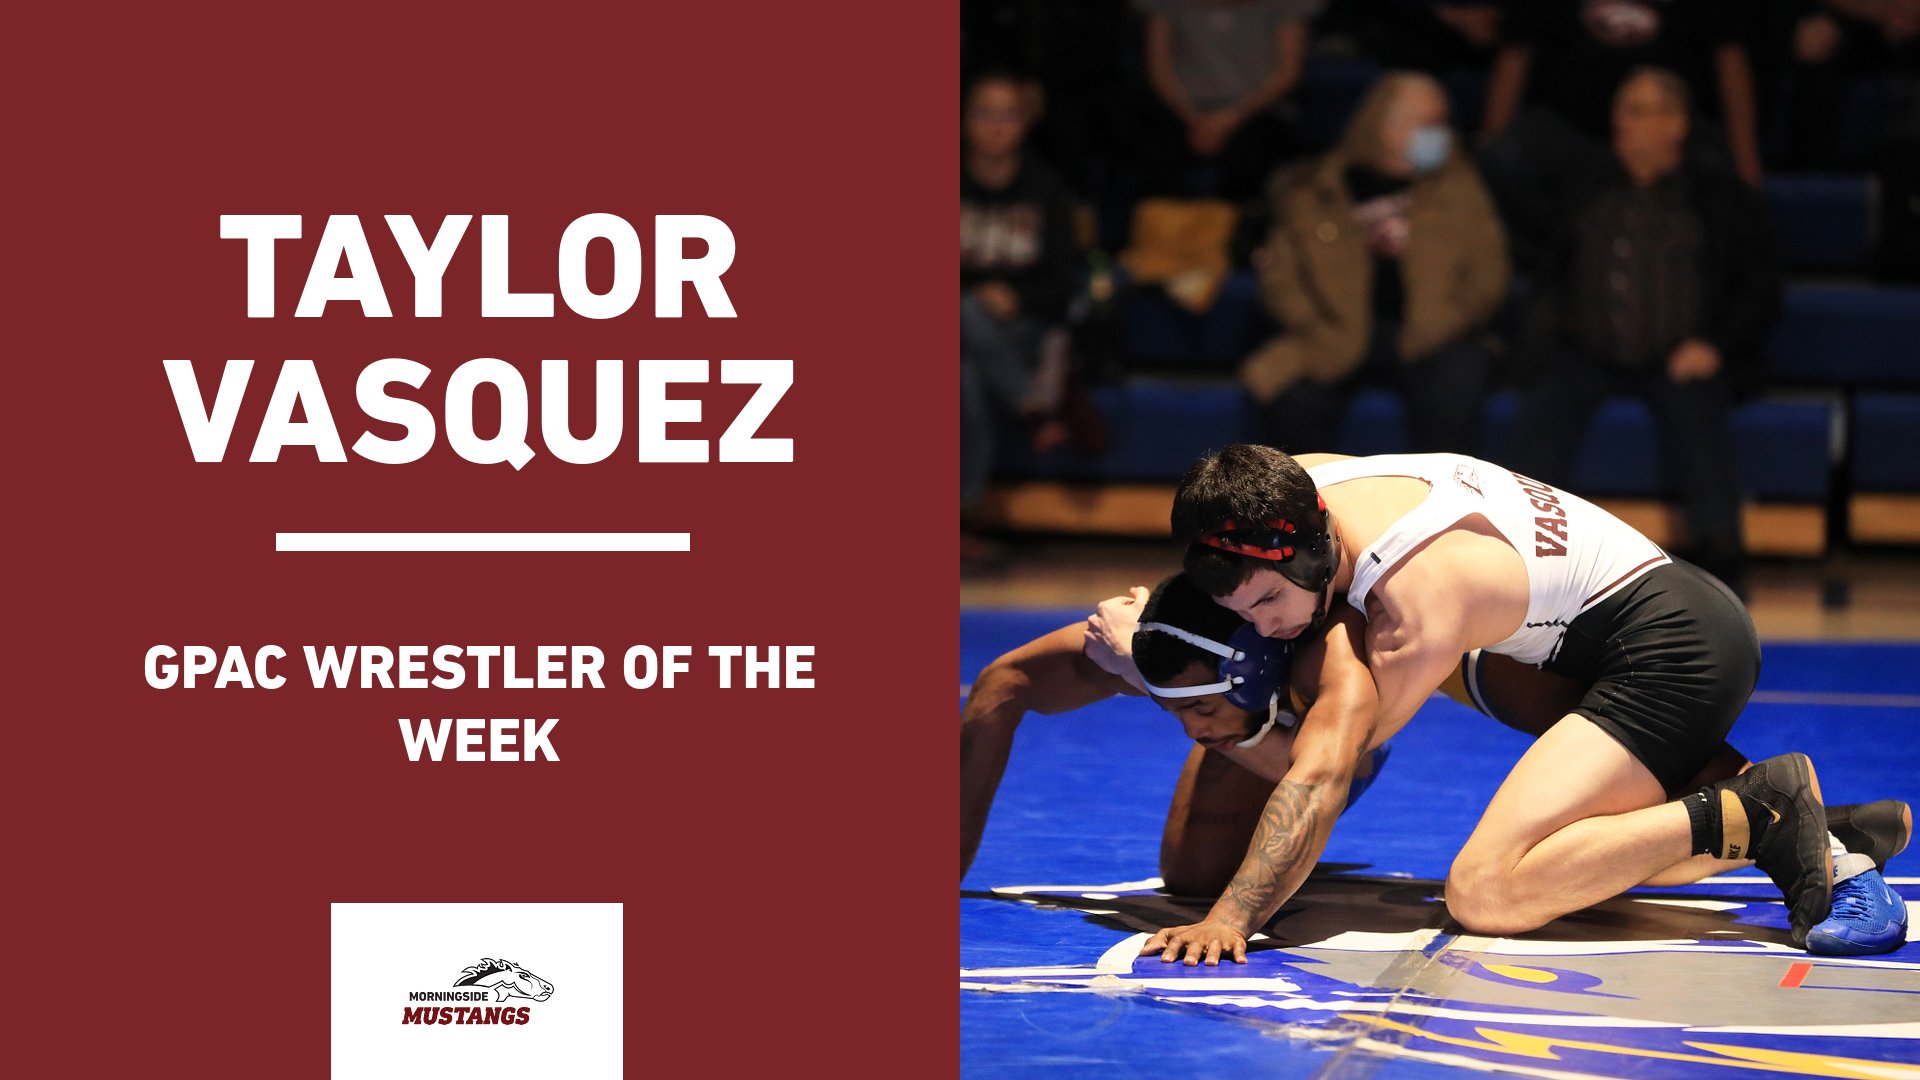 Vasquez named wrestler of the week